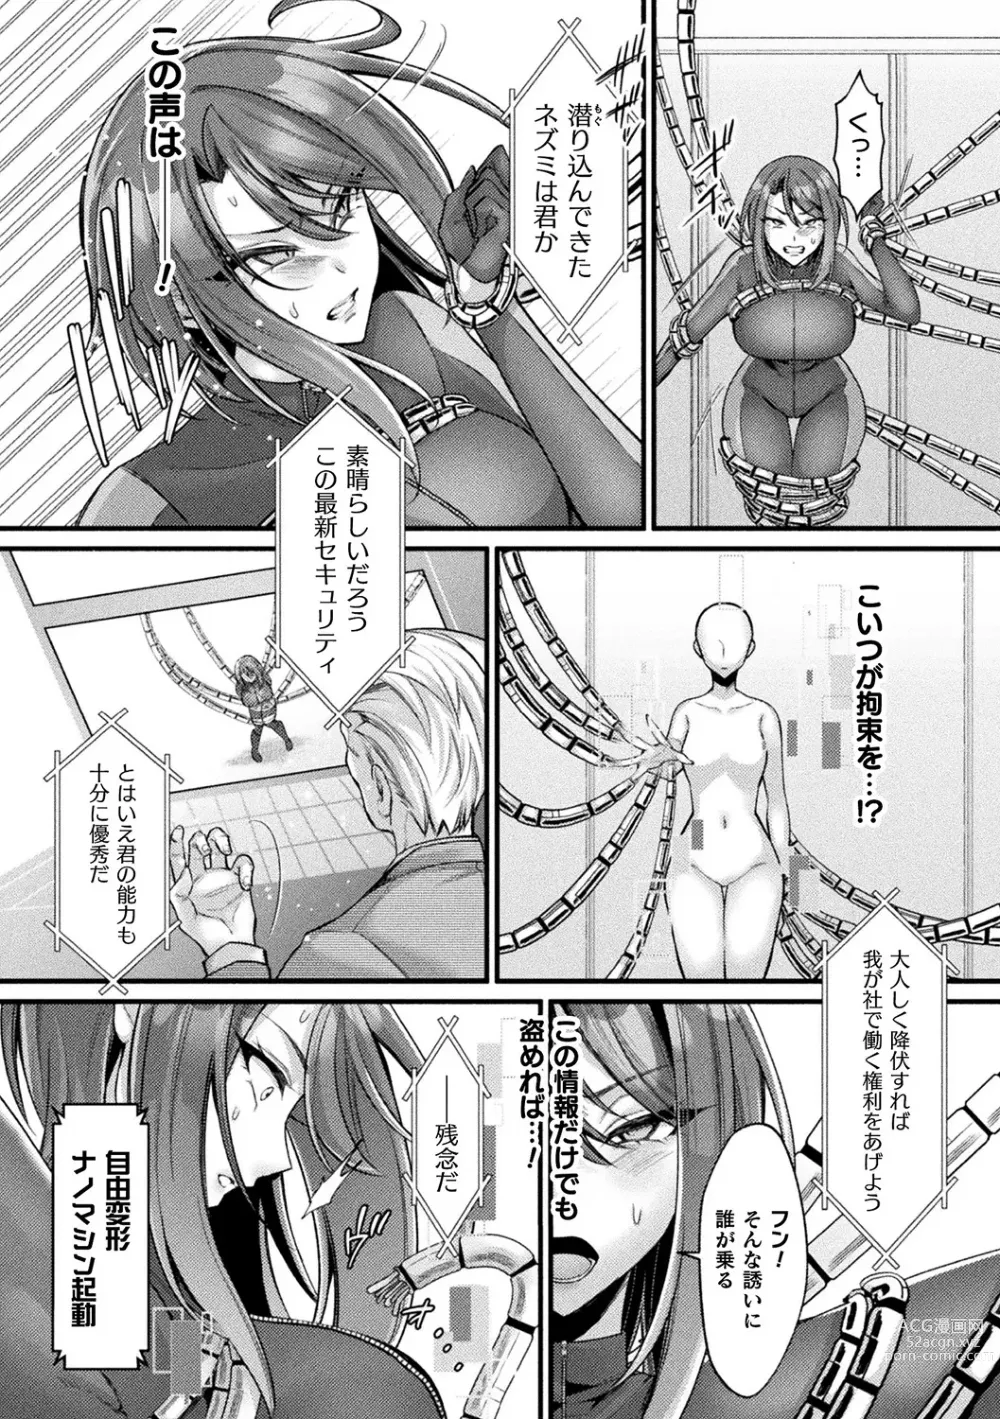 Page 7 of manga Bessatsu Comic Unreal AI ni Wakaraserareru Jinrui Hen Vol. 1